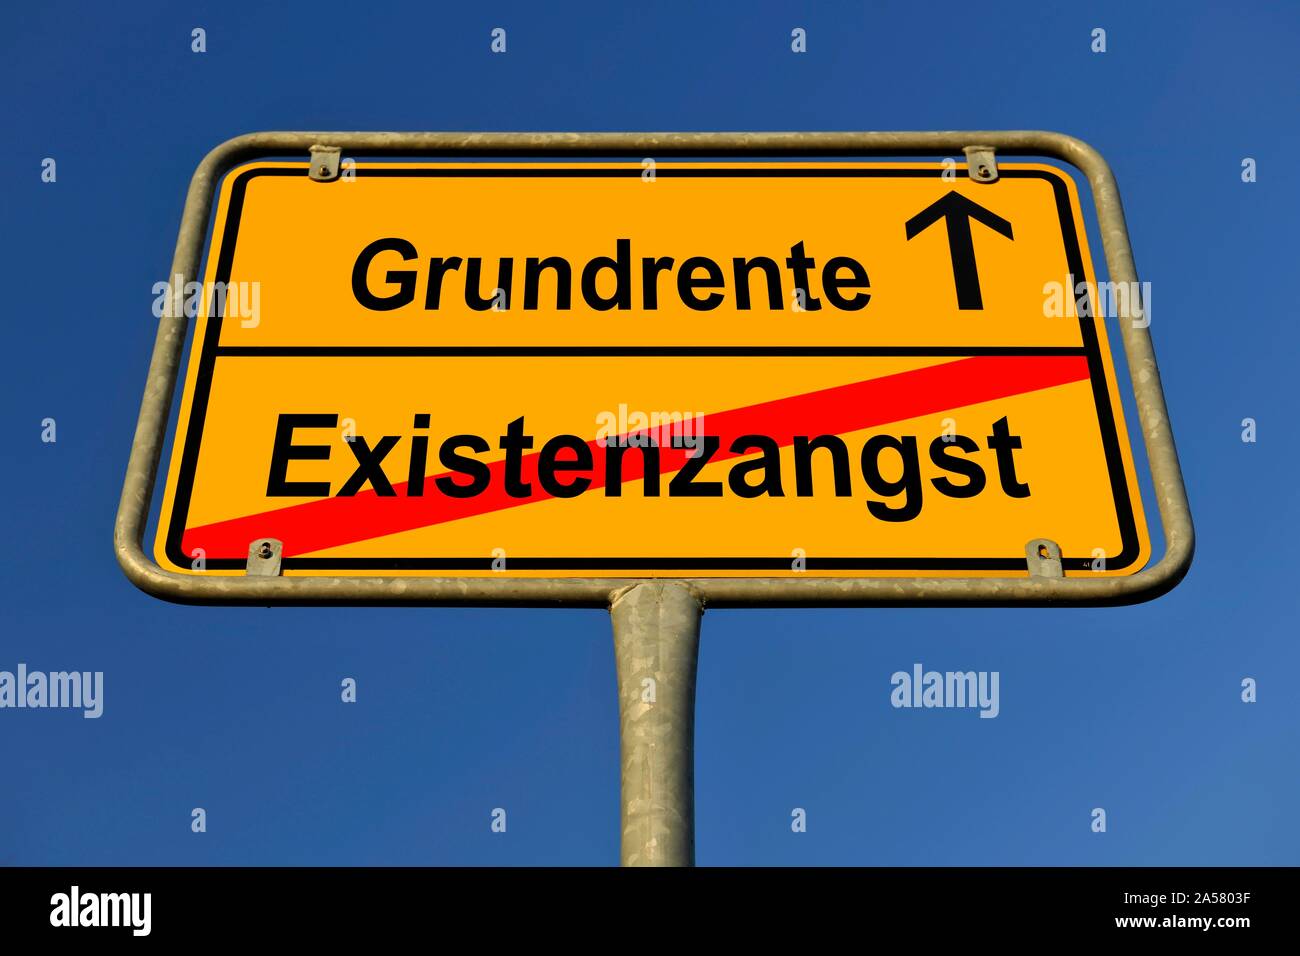 Composición digital de imágenes, la imagen símbolo pensión básica evita la angustia existencial, Alemania Foto de stock